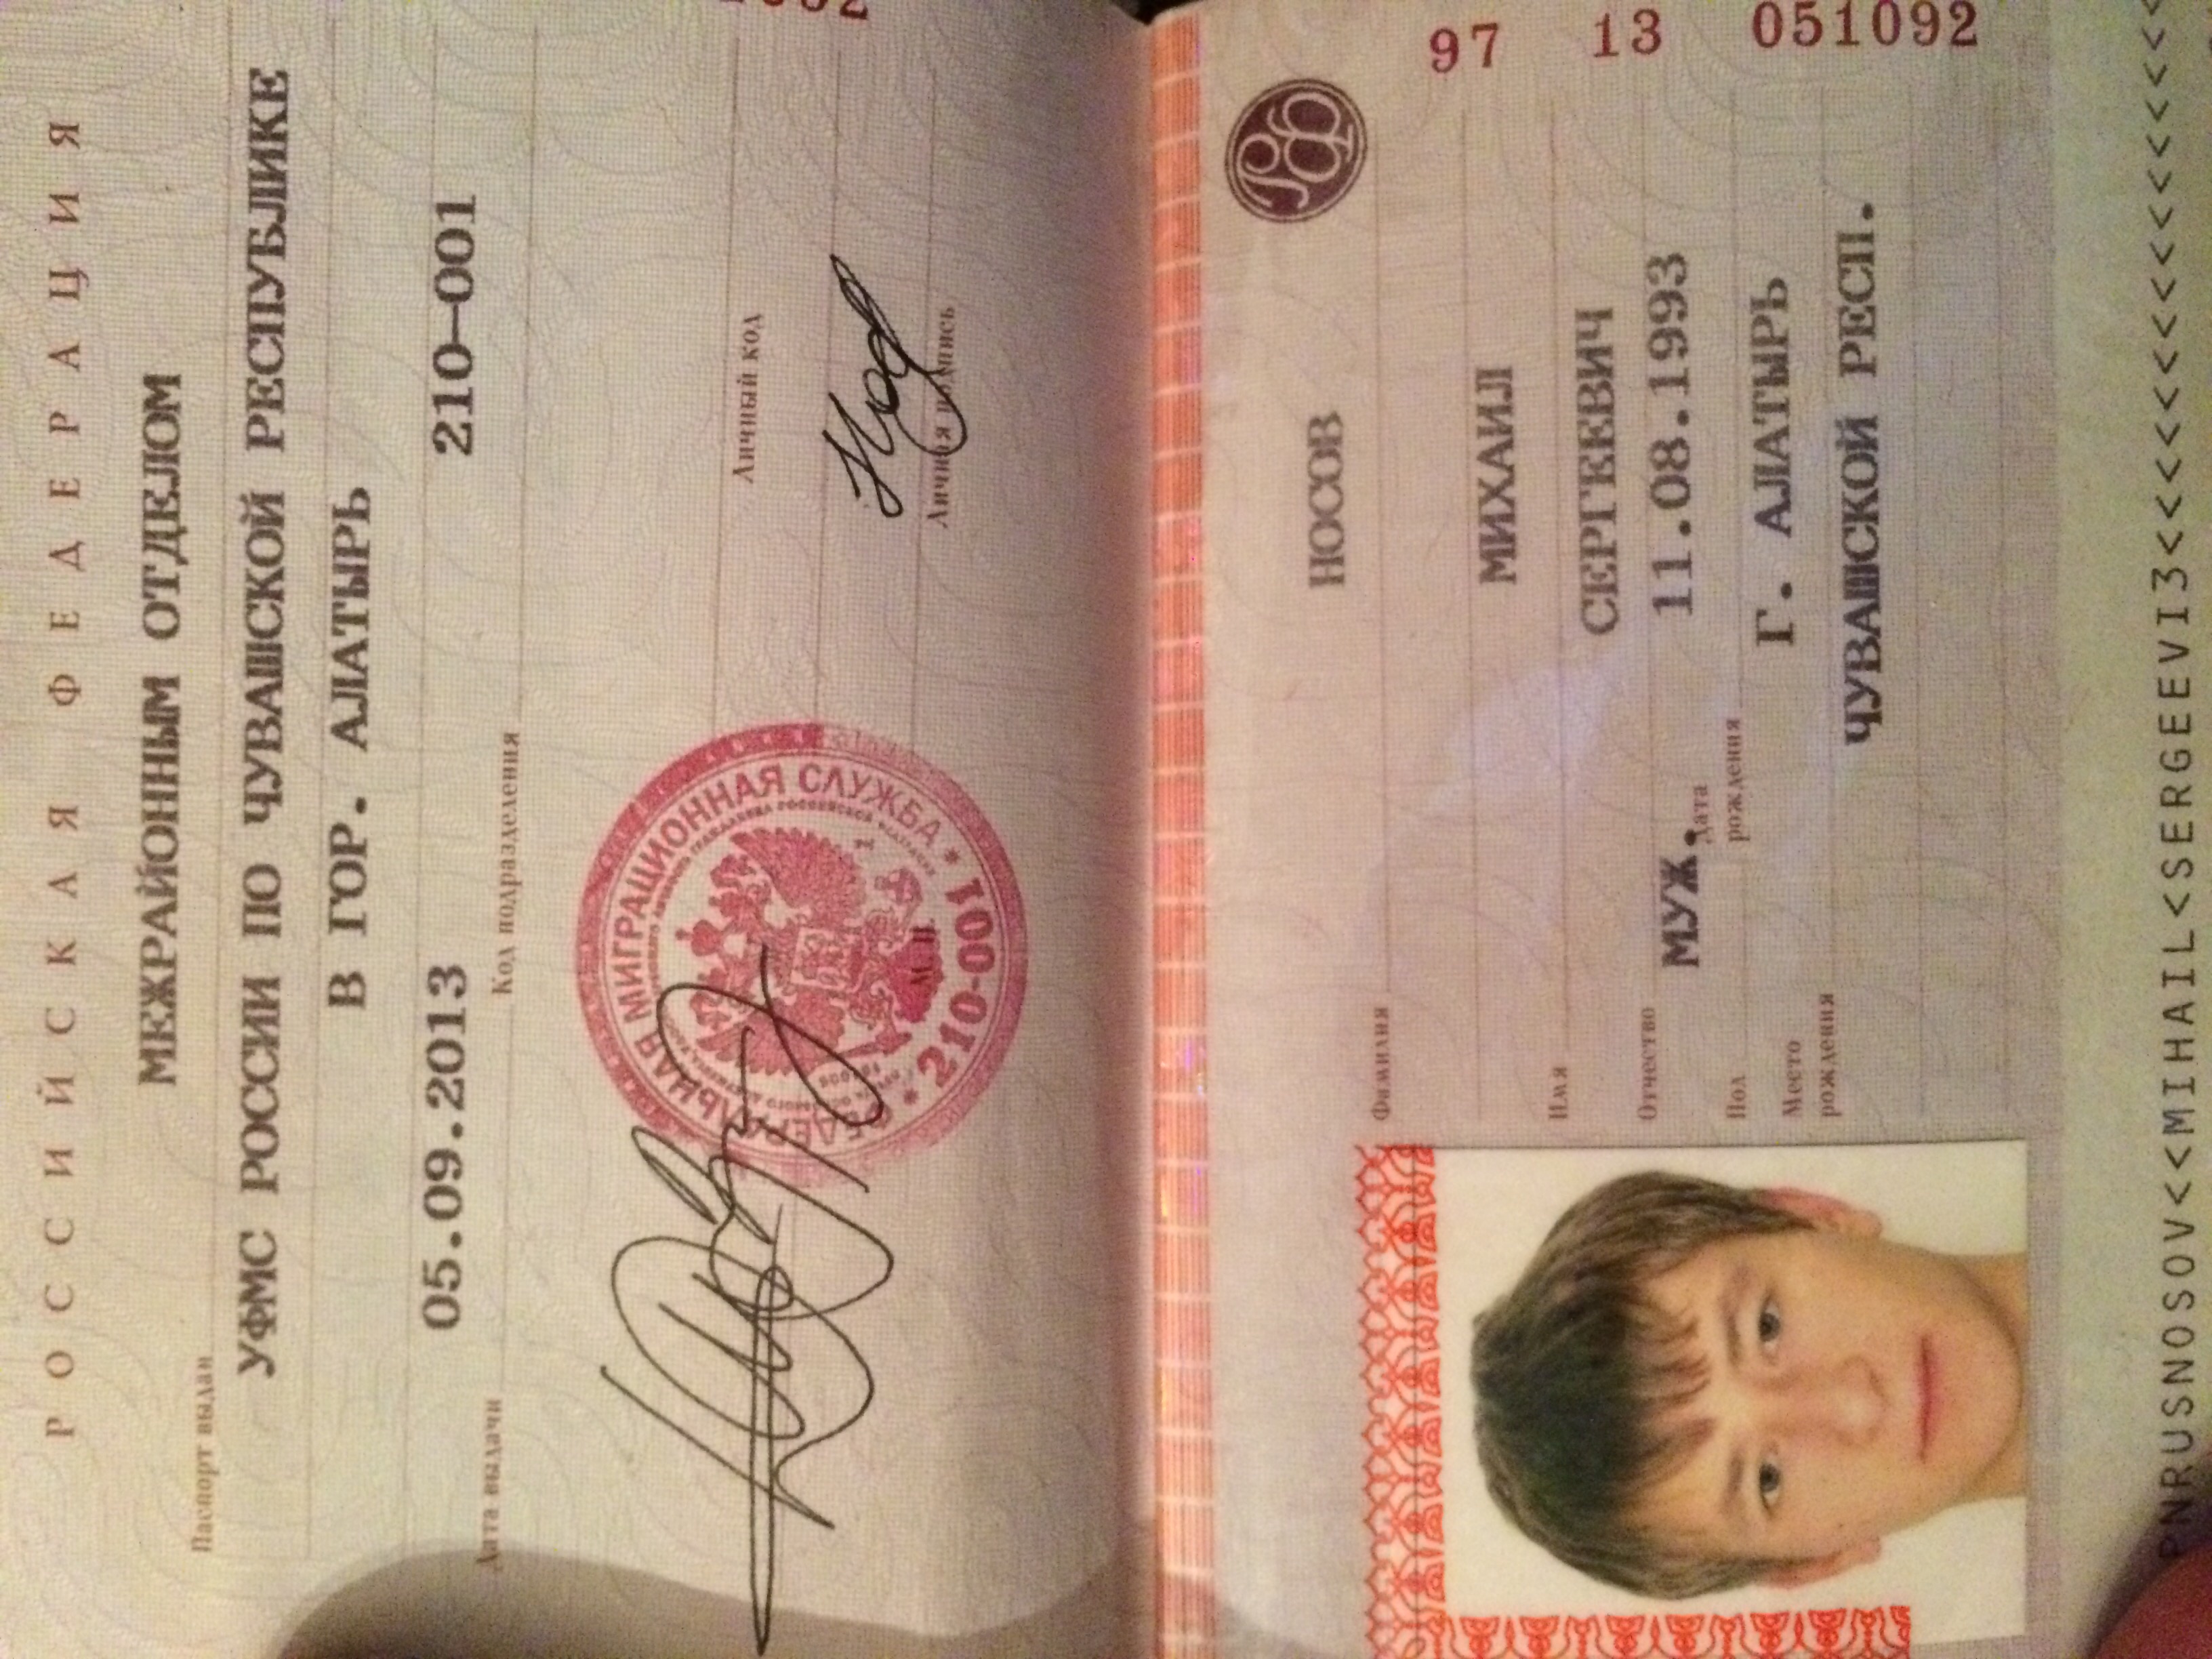 оформление фотографии паспорту